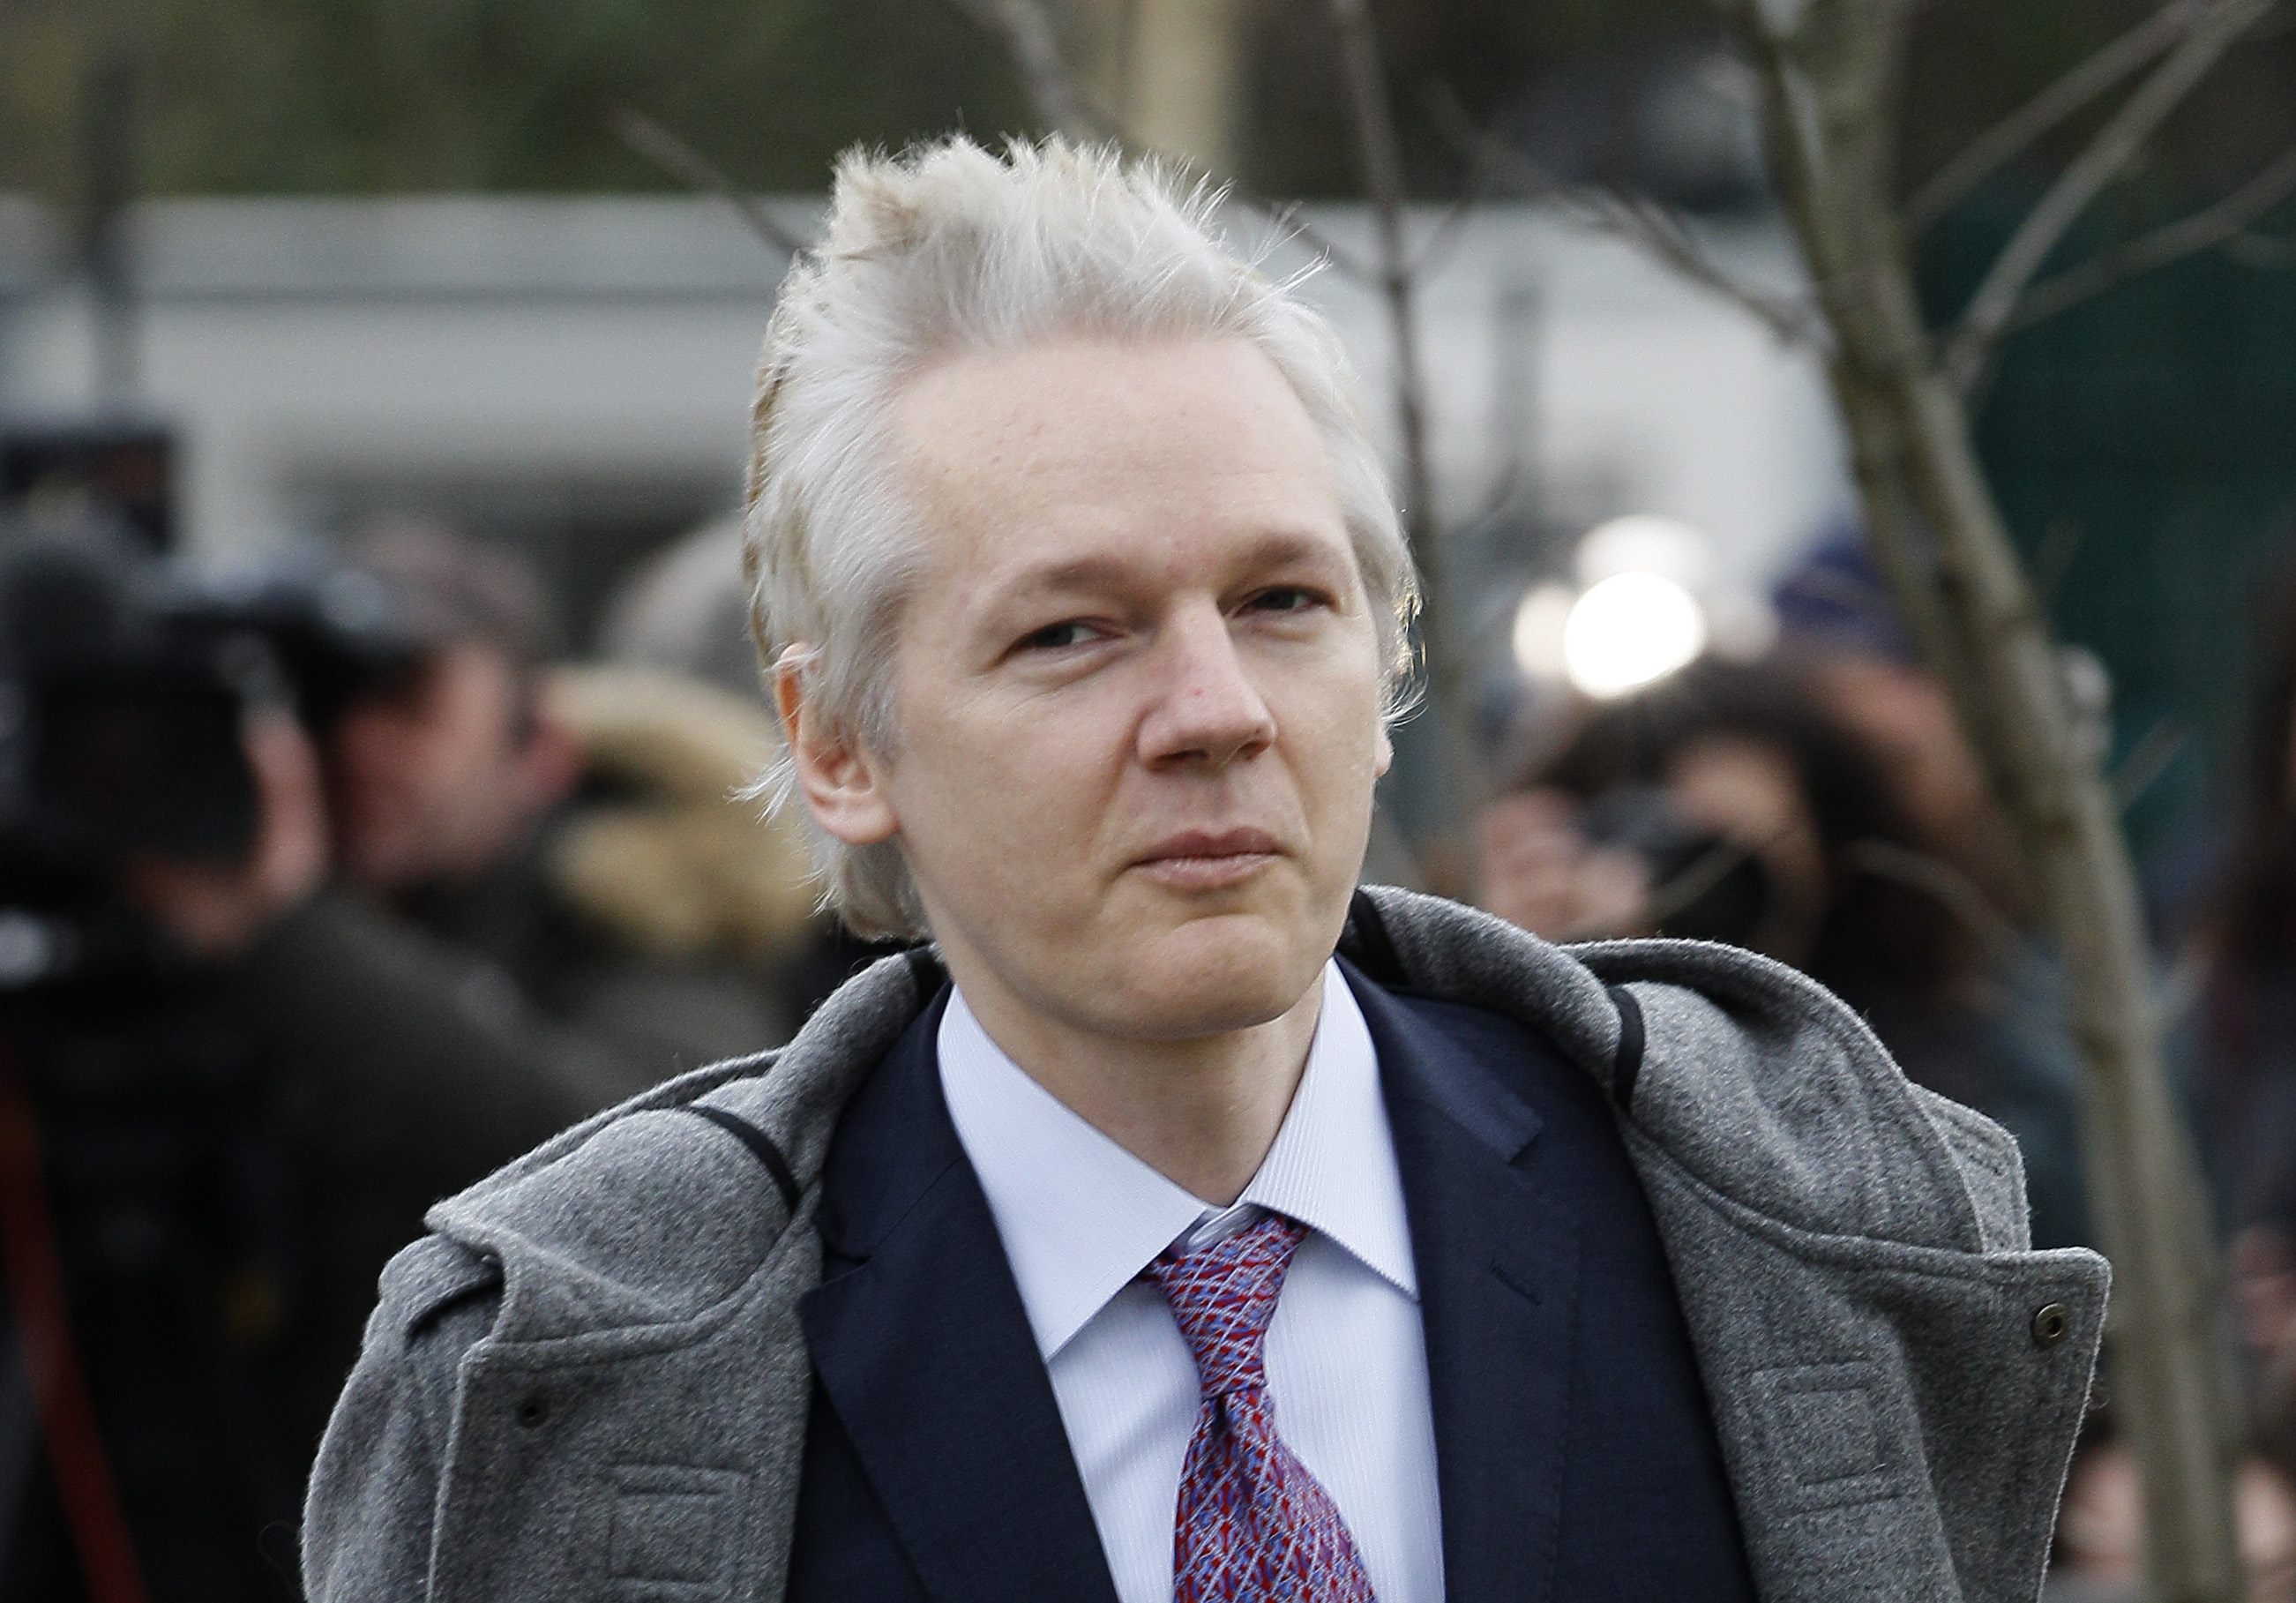 Julian Assange vid Belmarsh Magistrates Court i London. Han är orolig för att en rättegång i Sverige inte blir rättvis. Nu griper Australiens ambassadör in.